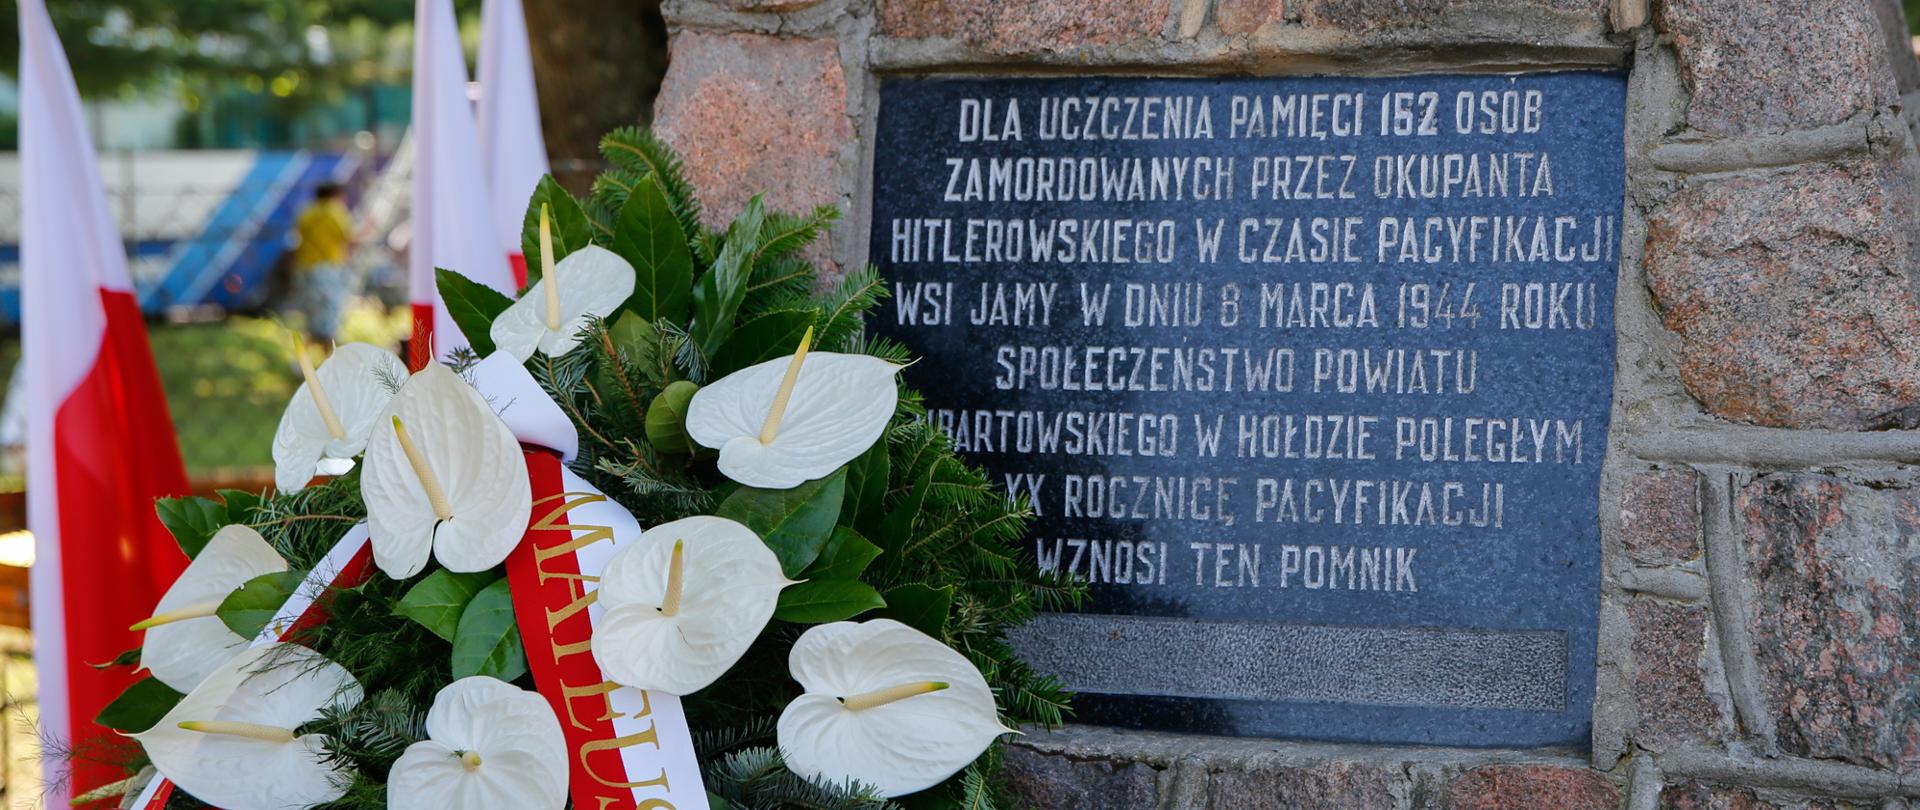 Pomnik upamiętniający zamordowanych w czasie pacyfikacji wsi Jamy.